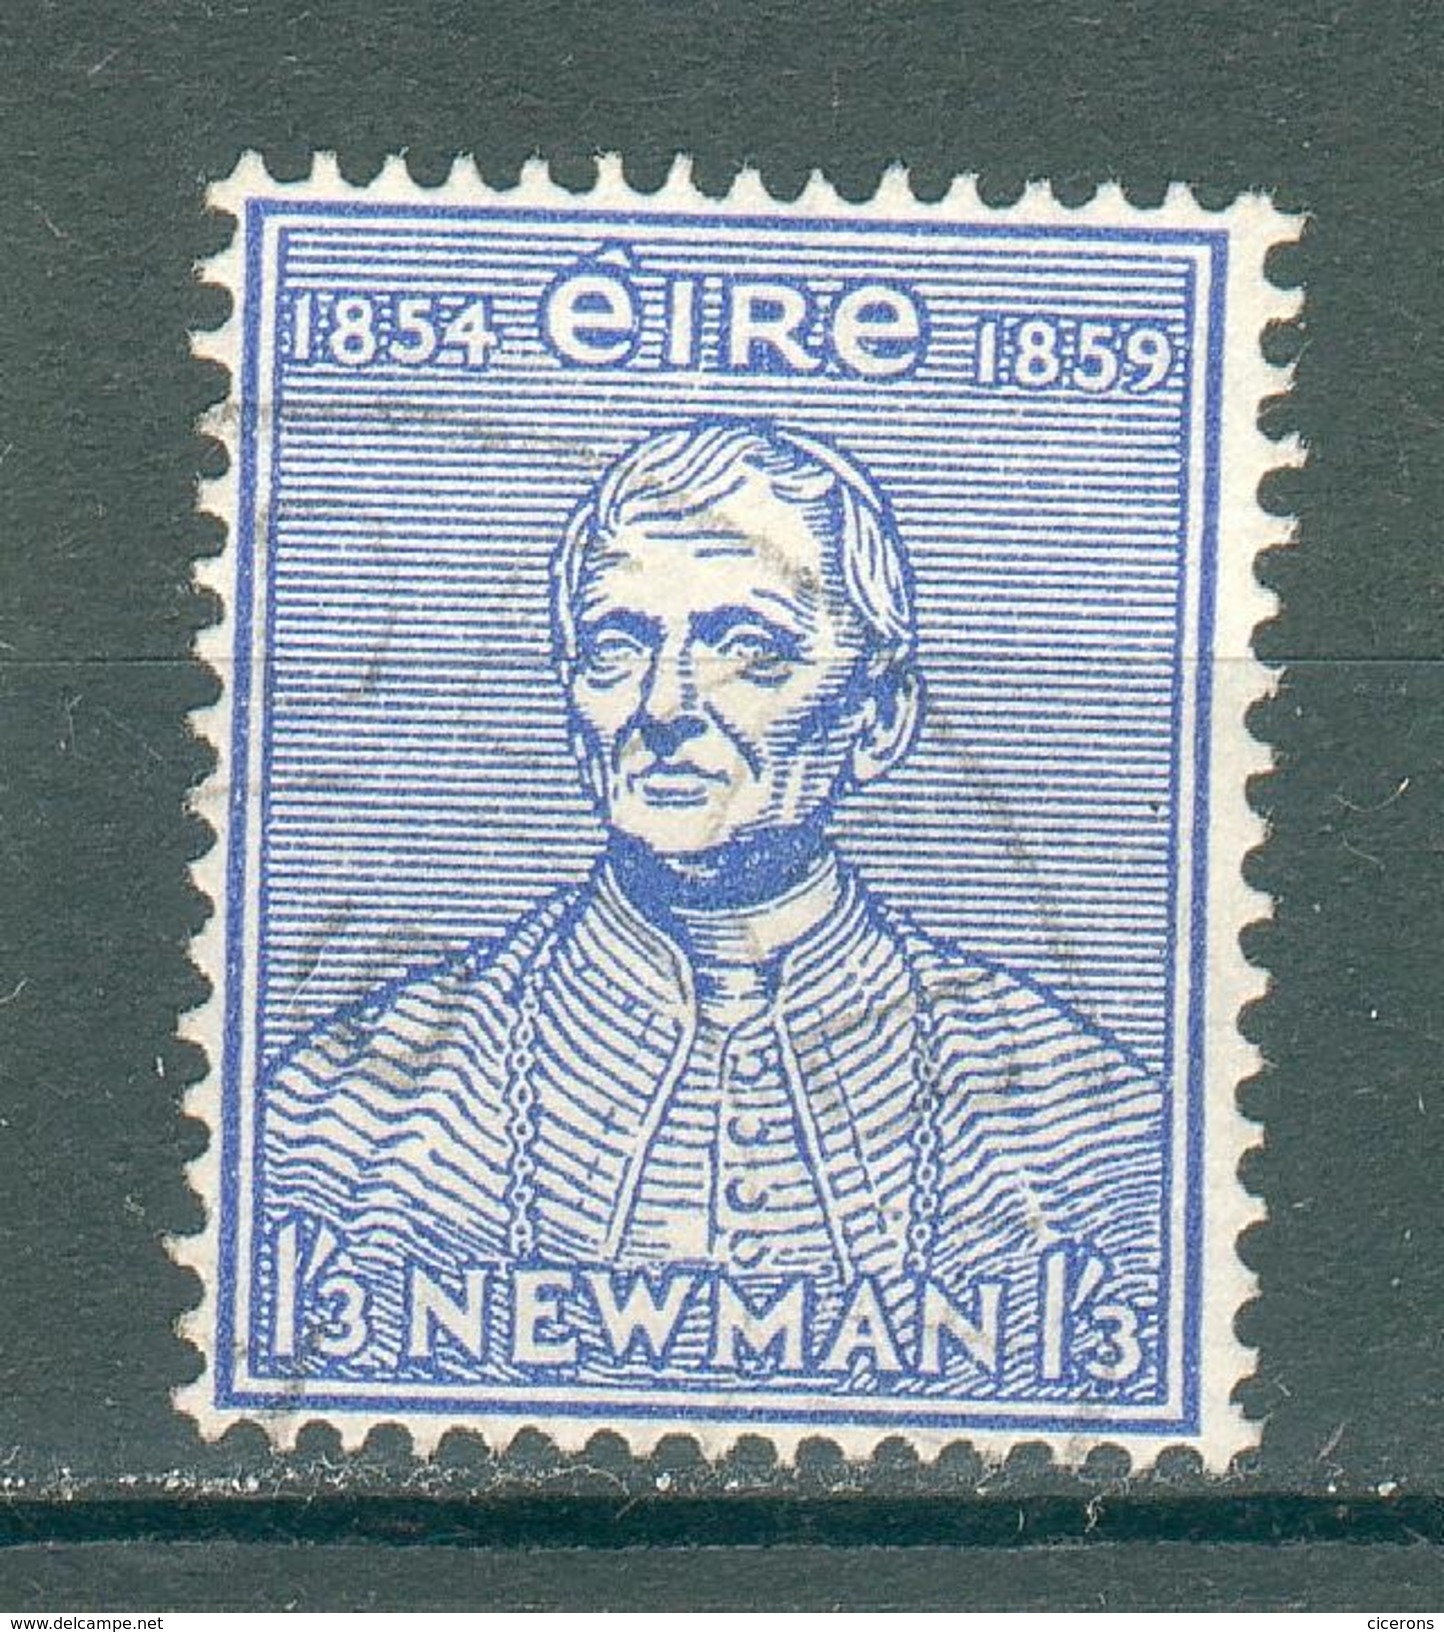 IRLANDE ; EIRE ; 1954 ; Y&T N° 125 ; Oblitéré - Used Stamps